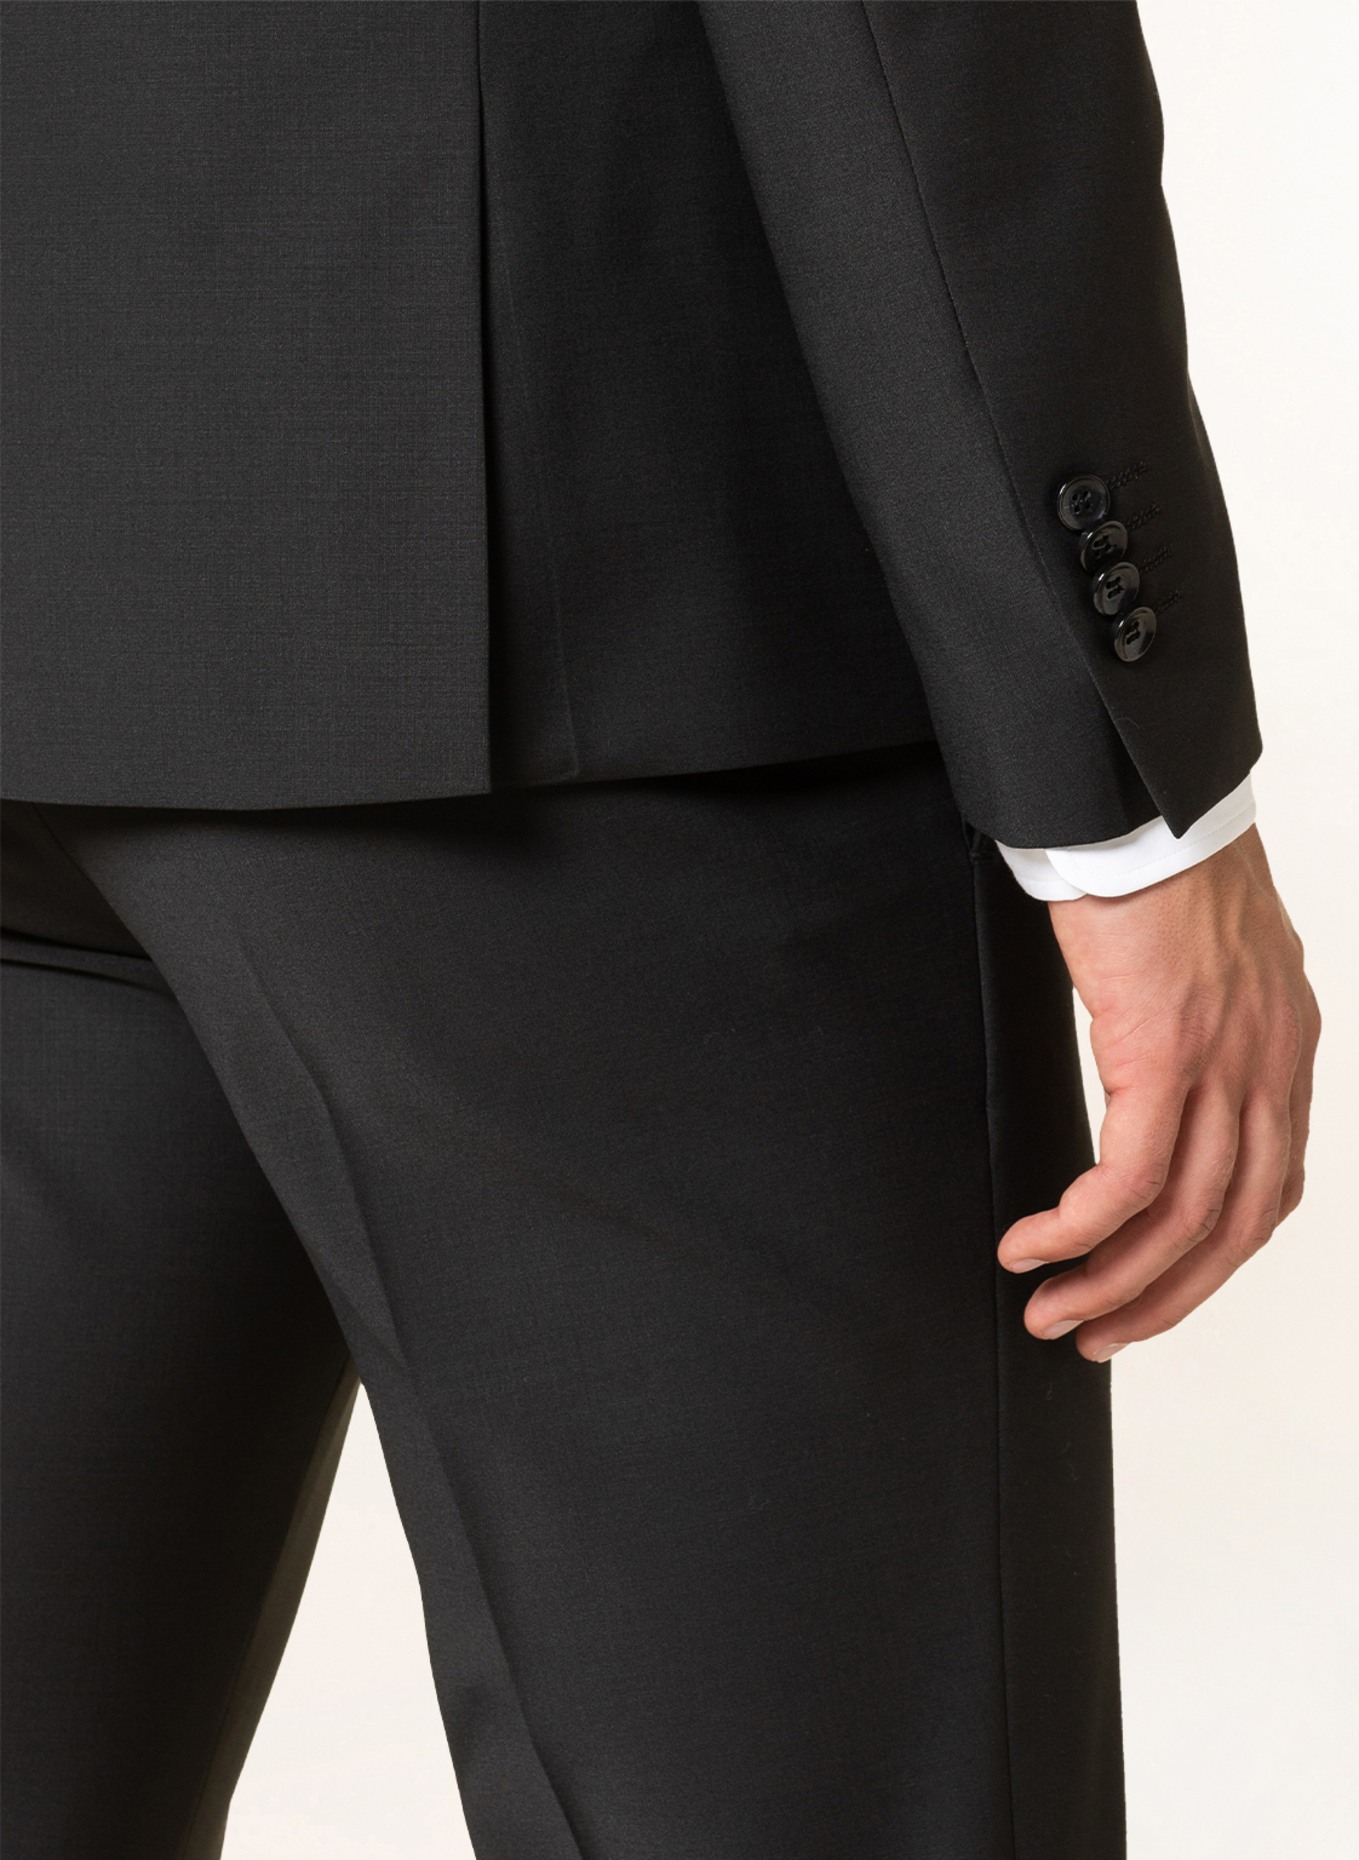 CINQUE Suit jacket CICASTELLO super slim fit, Color: 99 (Image 5)